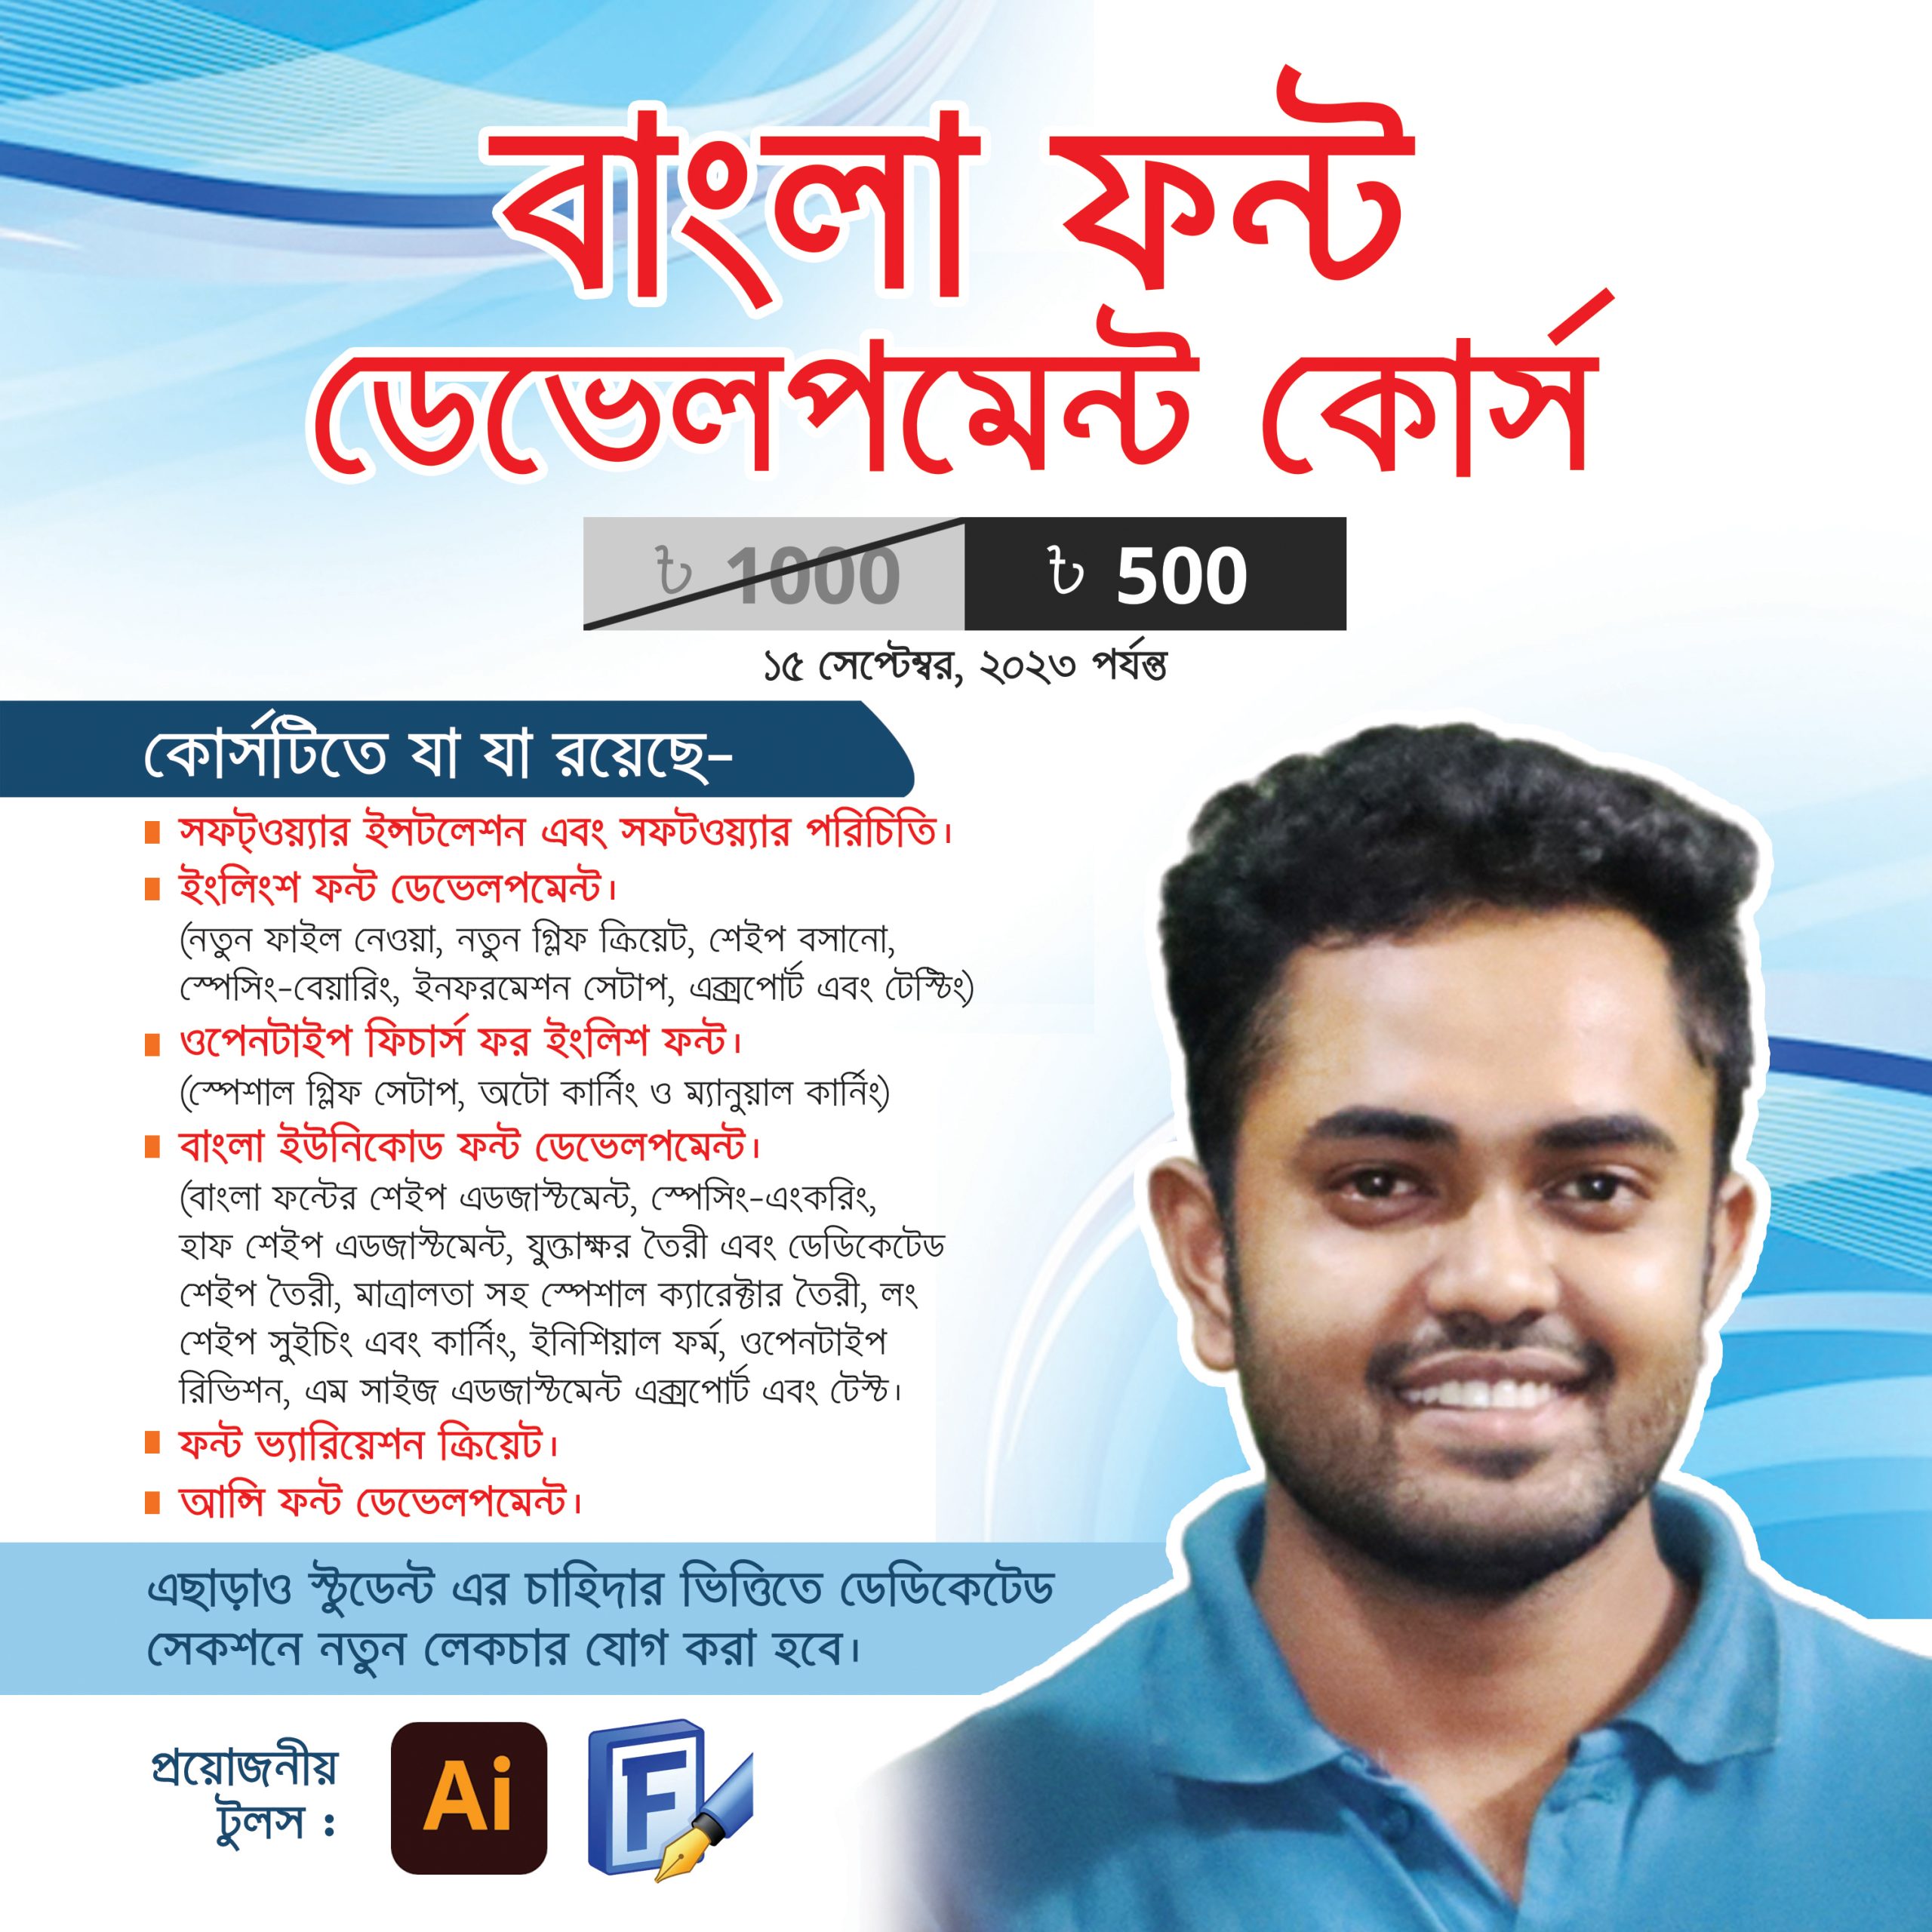 বাংলা ফন্ট ডেভেলপমেন্ট কোর্স । Bangla Font Development Course